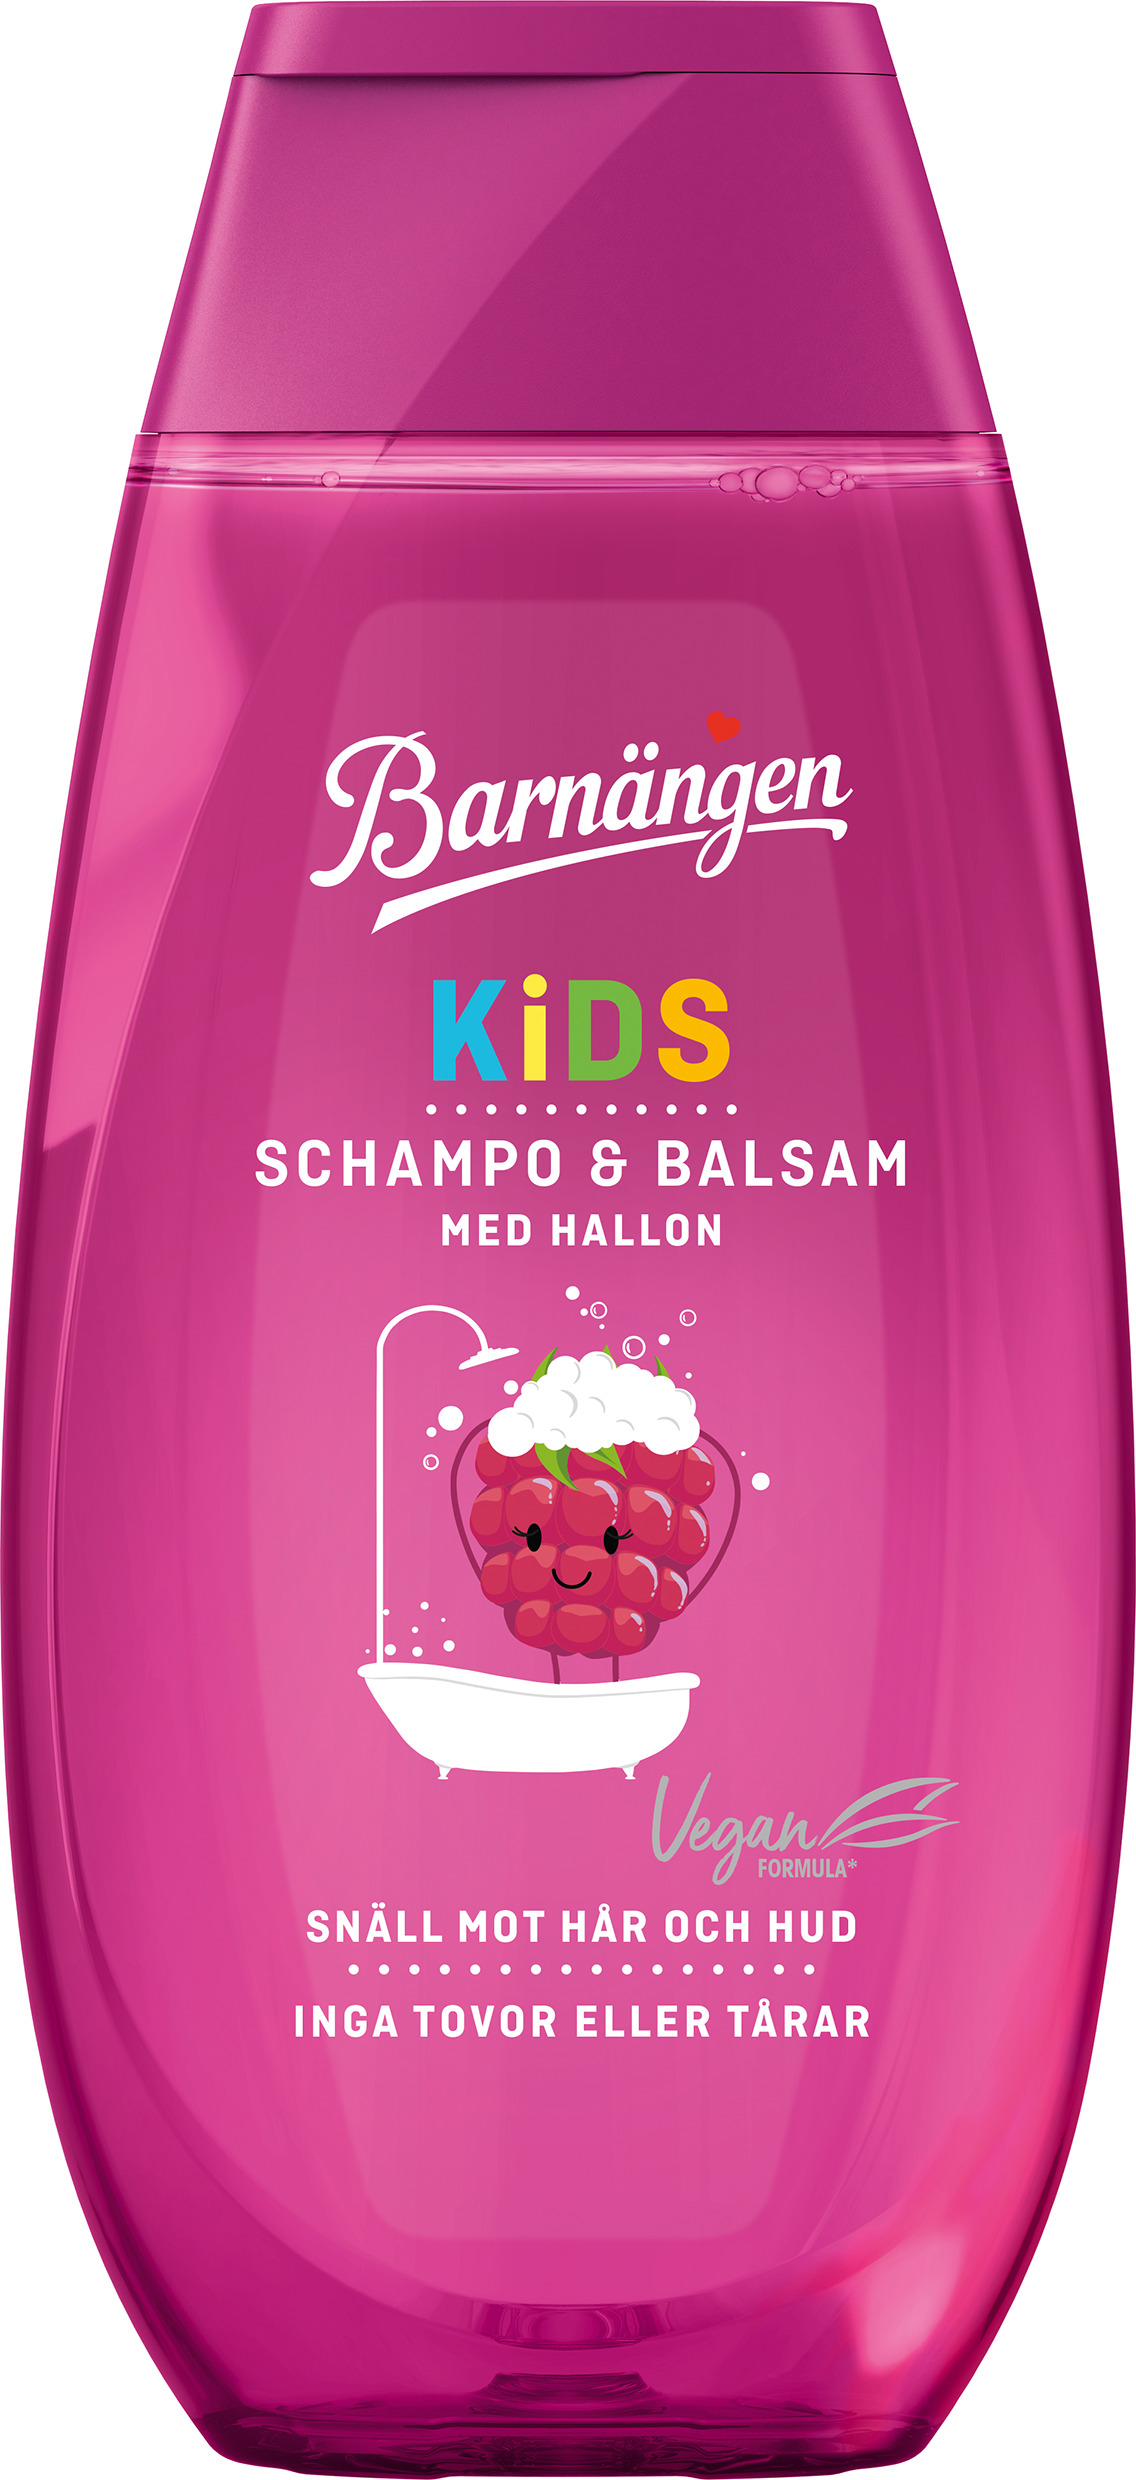 Barnängen Kids Hallon Schampo & Balsam 250 ml